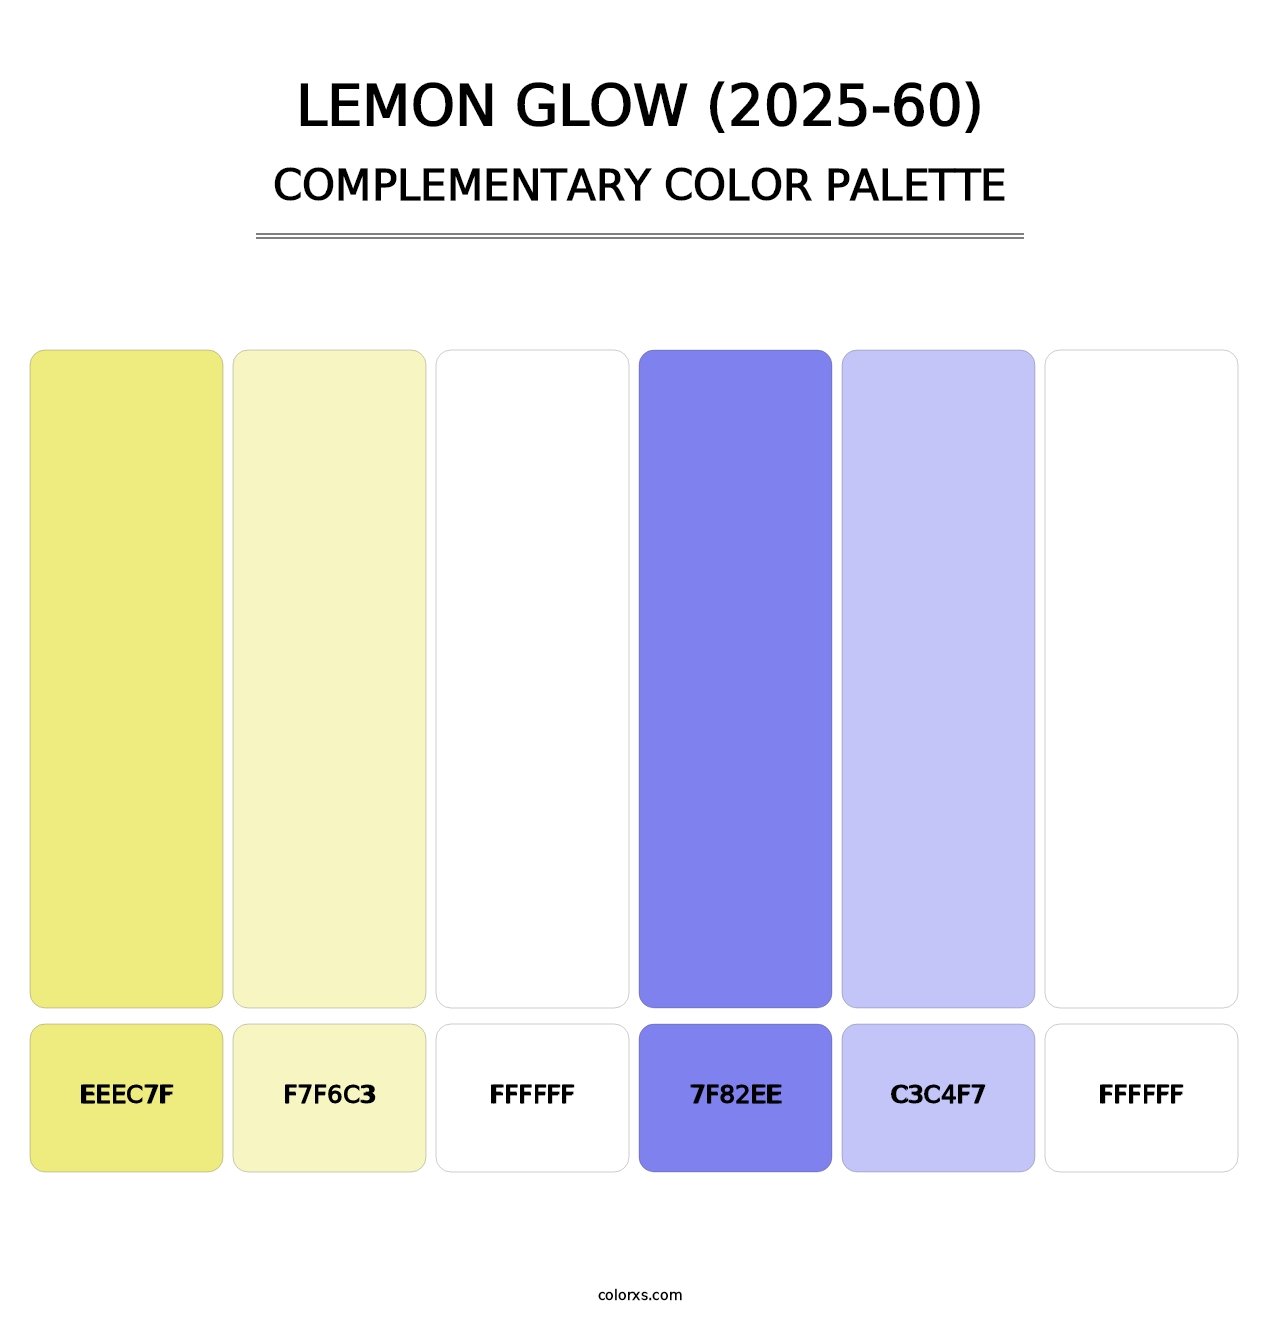 Lemon Glow (2025-60) - Complementary Color Palette